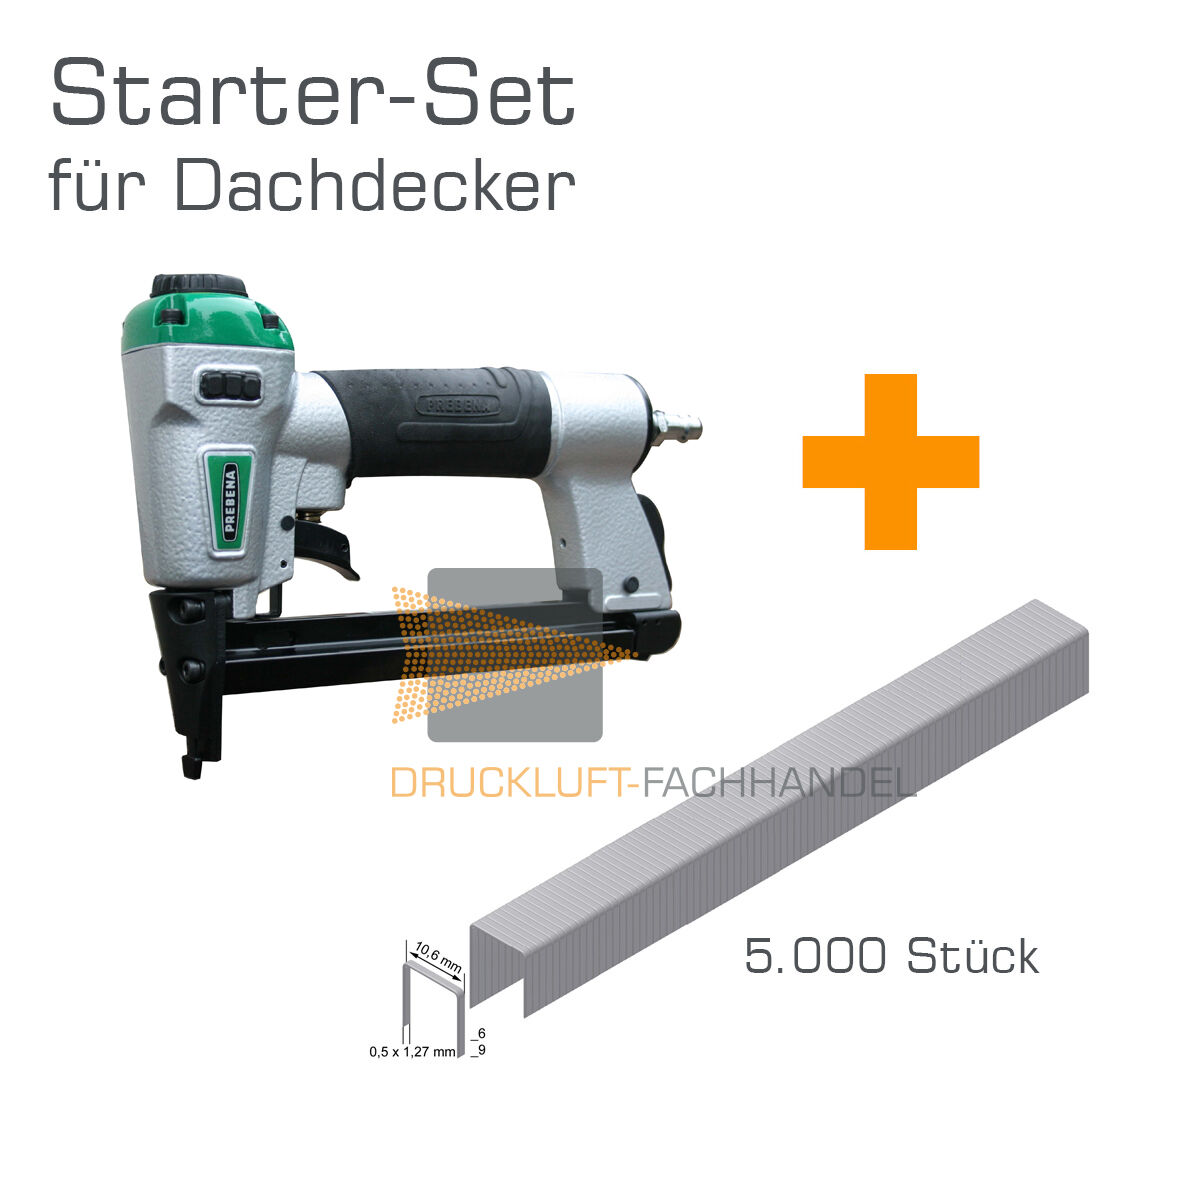 AKTION Prebena Druckluftnagler DNPF16 + 5.000 PF09CNK Heftklammern - Starter-Set für Dachdecker